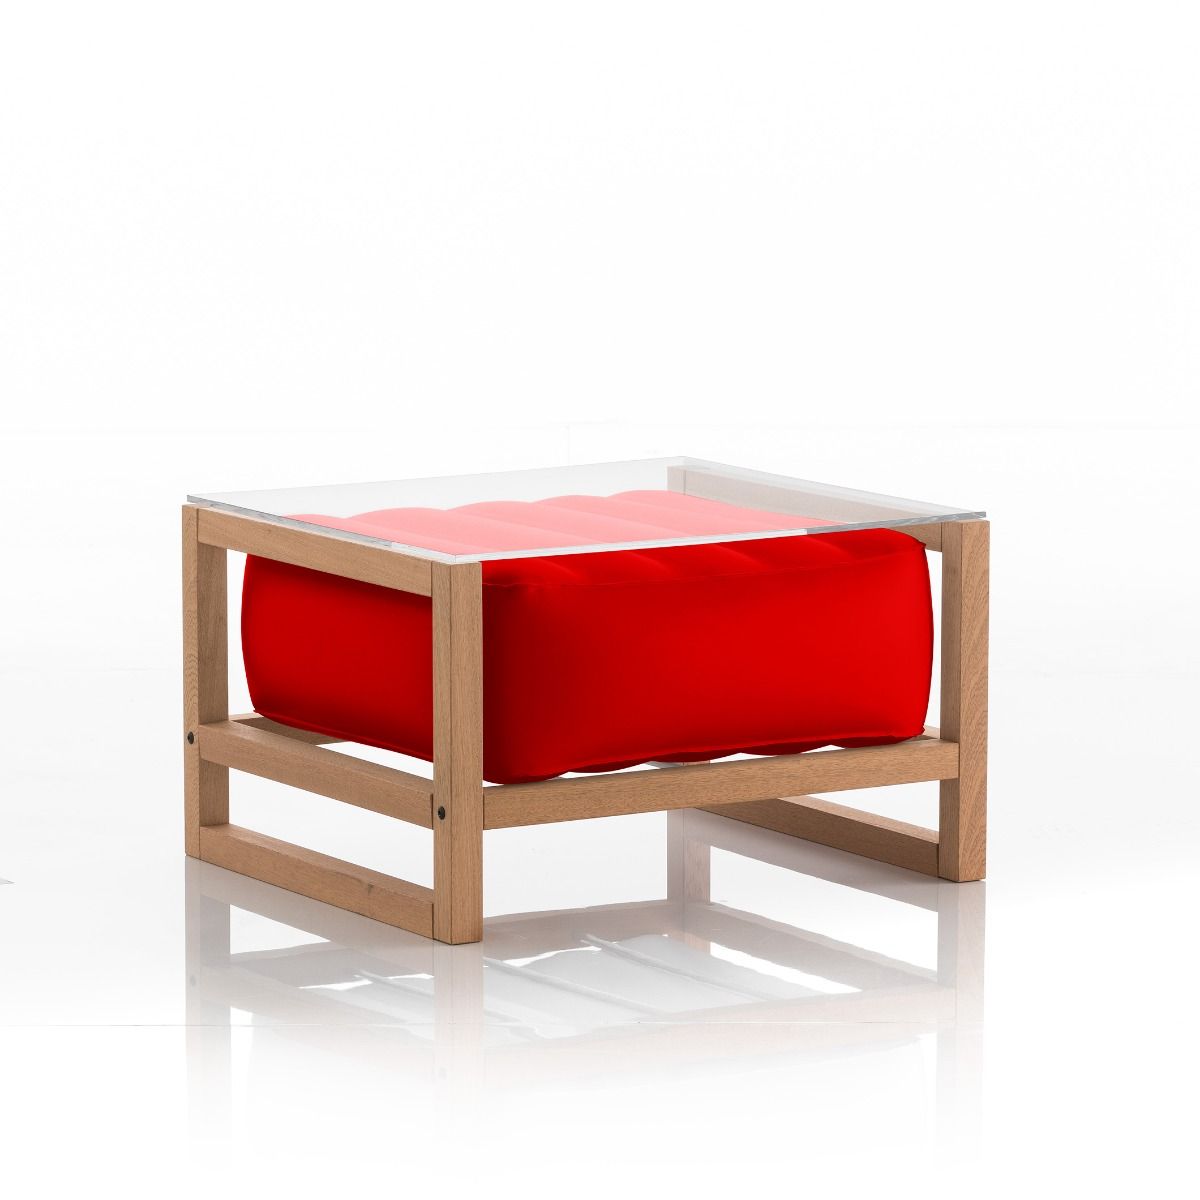 Table basse pvc rouge cadre en bois